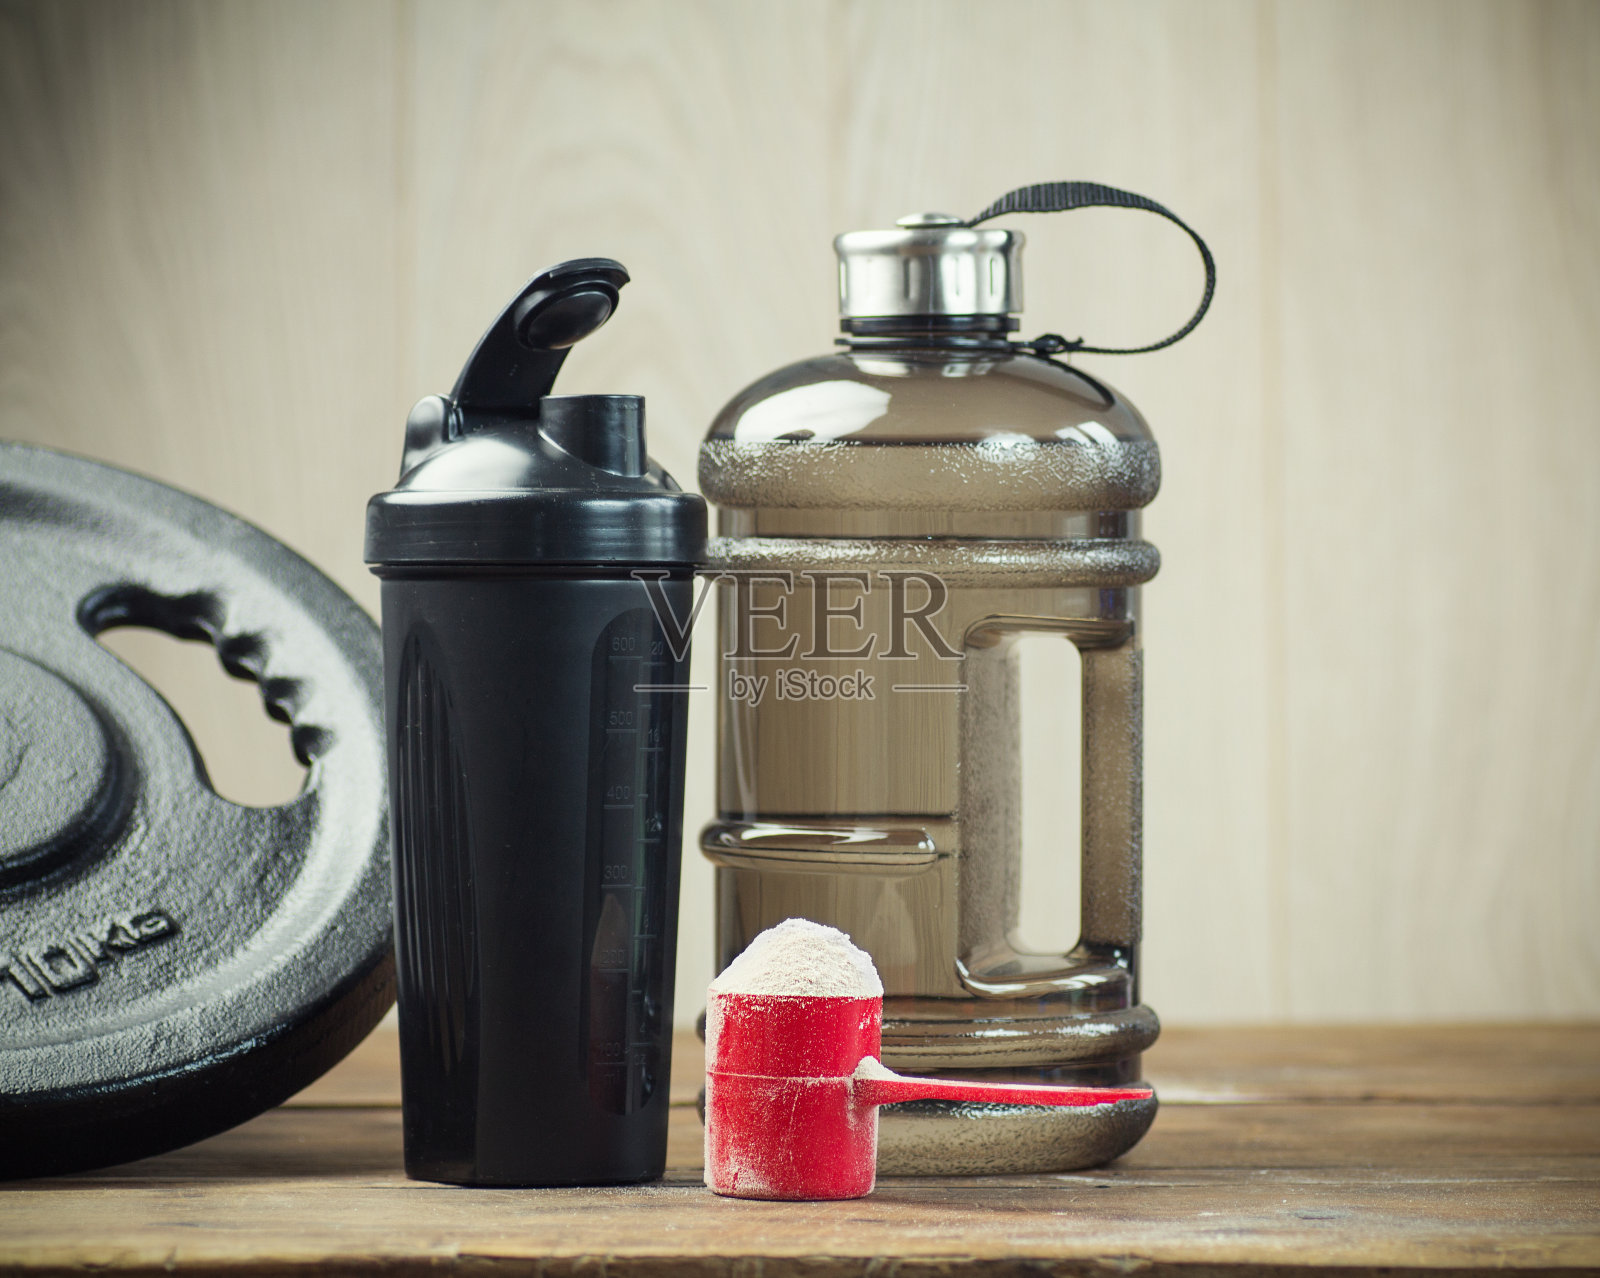 一勺蛋白质粉，是高强度锻炼后肌肉恢复的必要营养，旁边放着蛋白质调酒器照片摄影图片